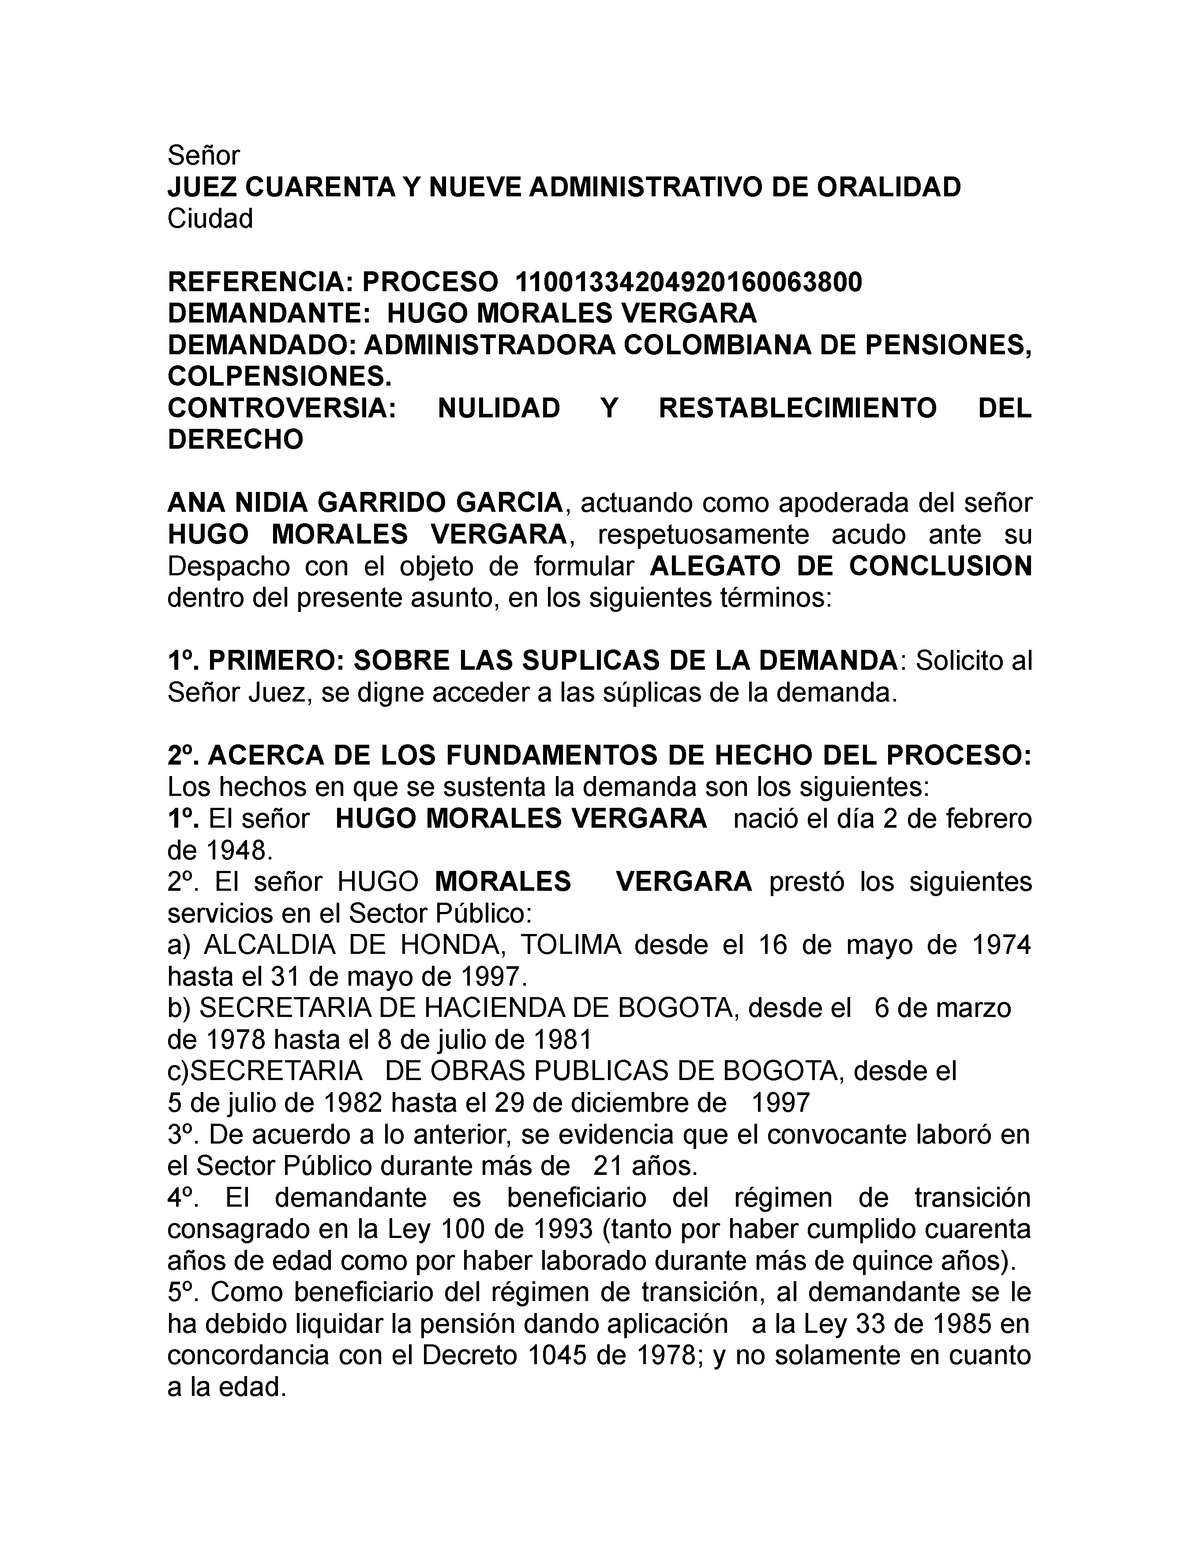 Alegatos Conclusión - JUEZ CUARENTA Y NUEVE ADMINISTRATIVO DE ORALIDAD  Ciudad REFERENCIA: PROCESO - Studocu